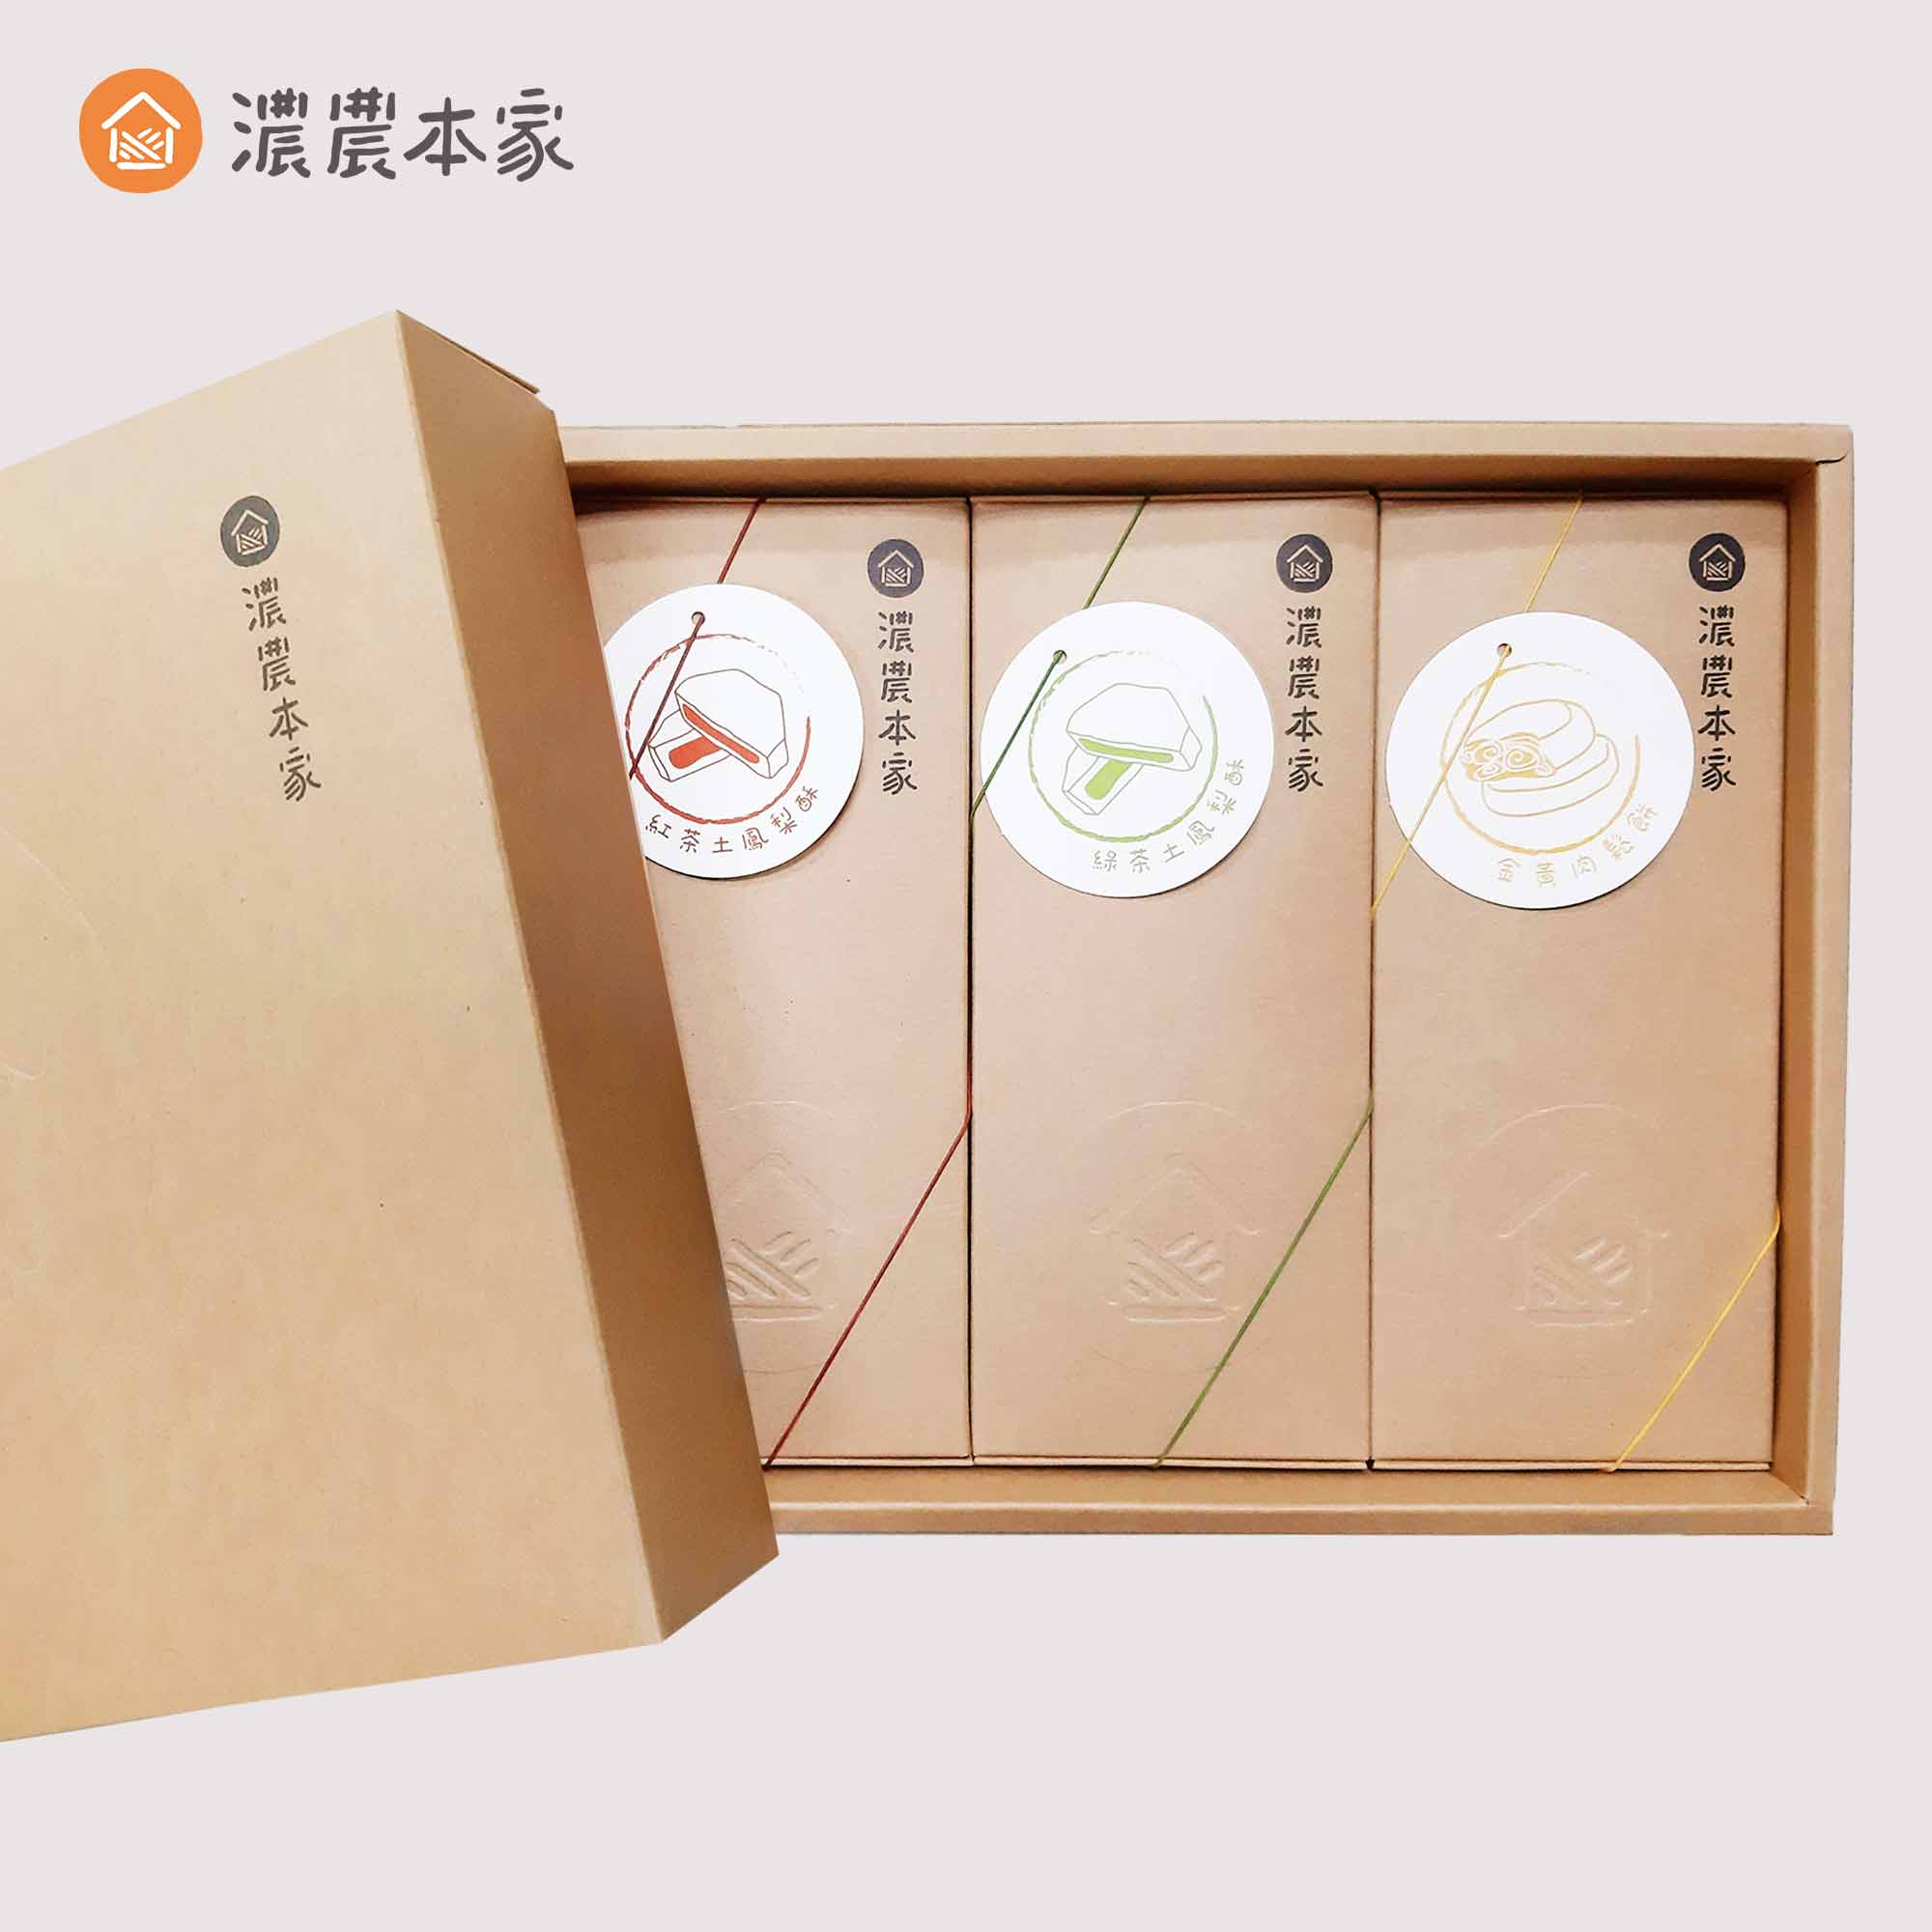 企業送禮客戶伴手禮盒推薦人氣台灣茶鳳梨酥禮盒